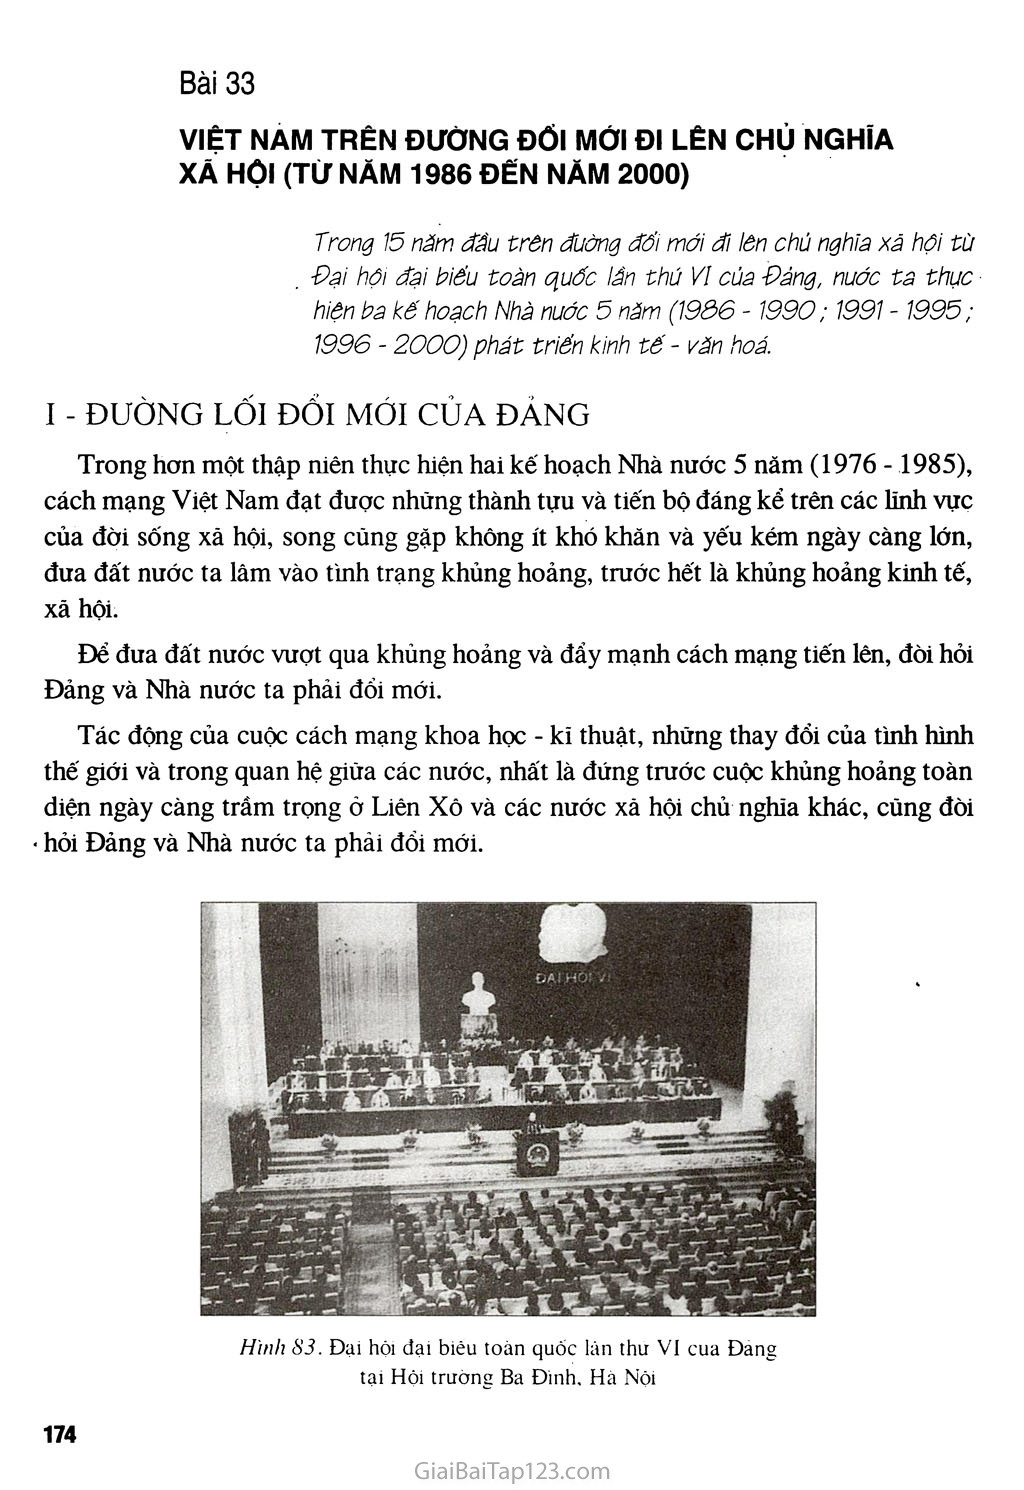 Bài 33 - Việt Nam trên đường đổi mới đi lên chủ nghĩa xã hội (từ năm 1986 đến năm 2000) trang 1